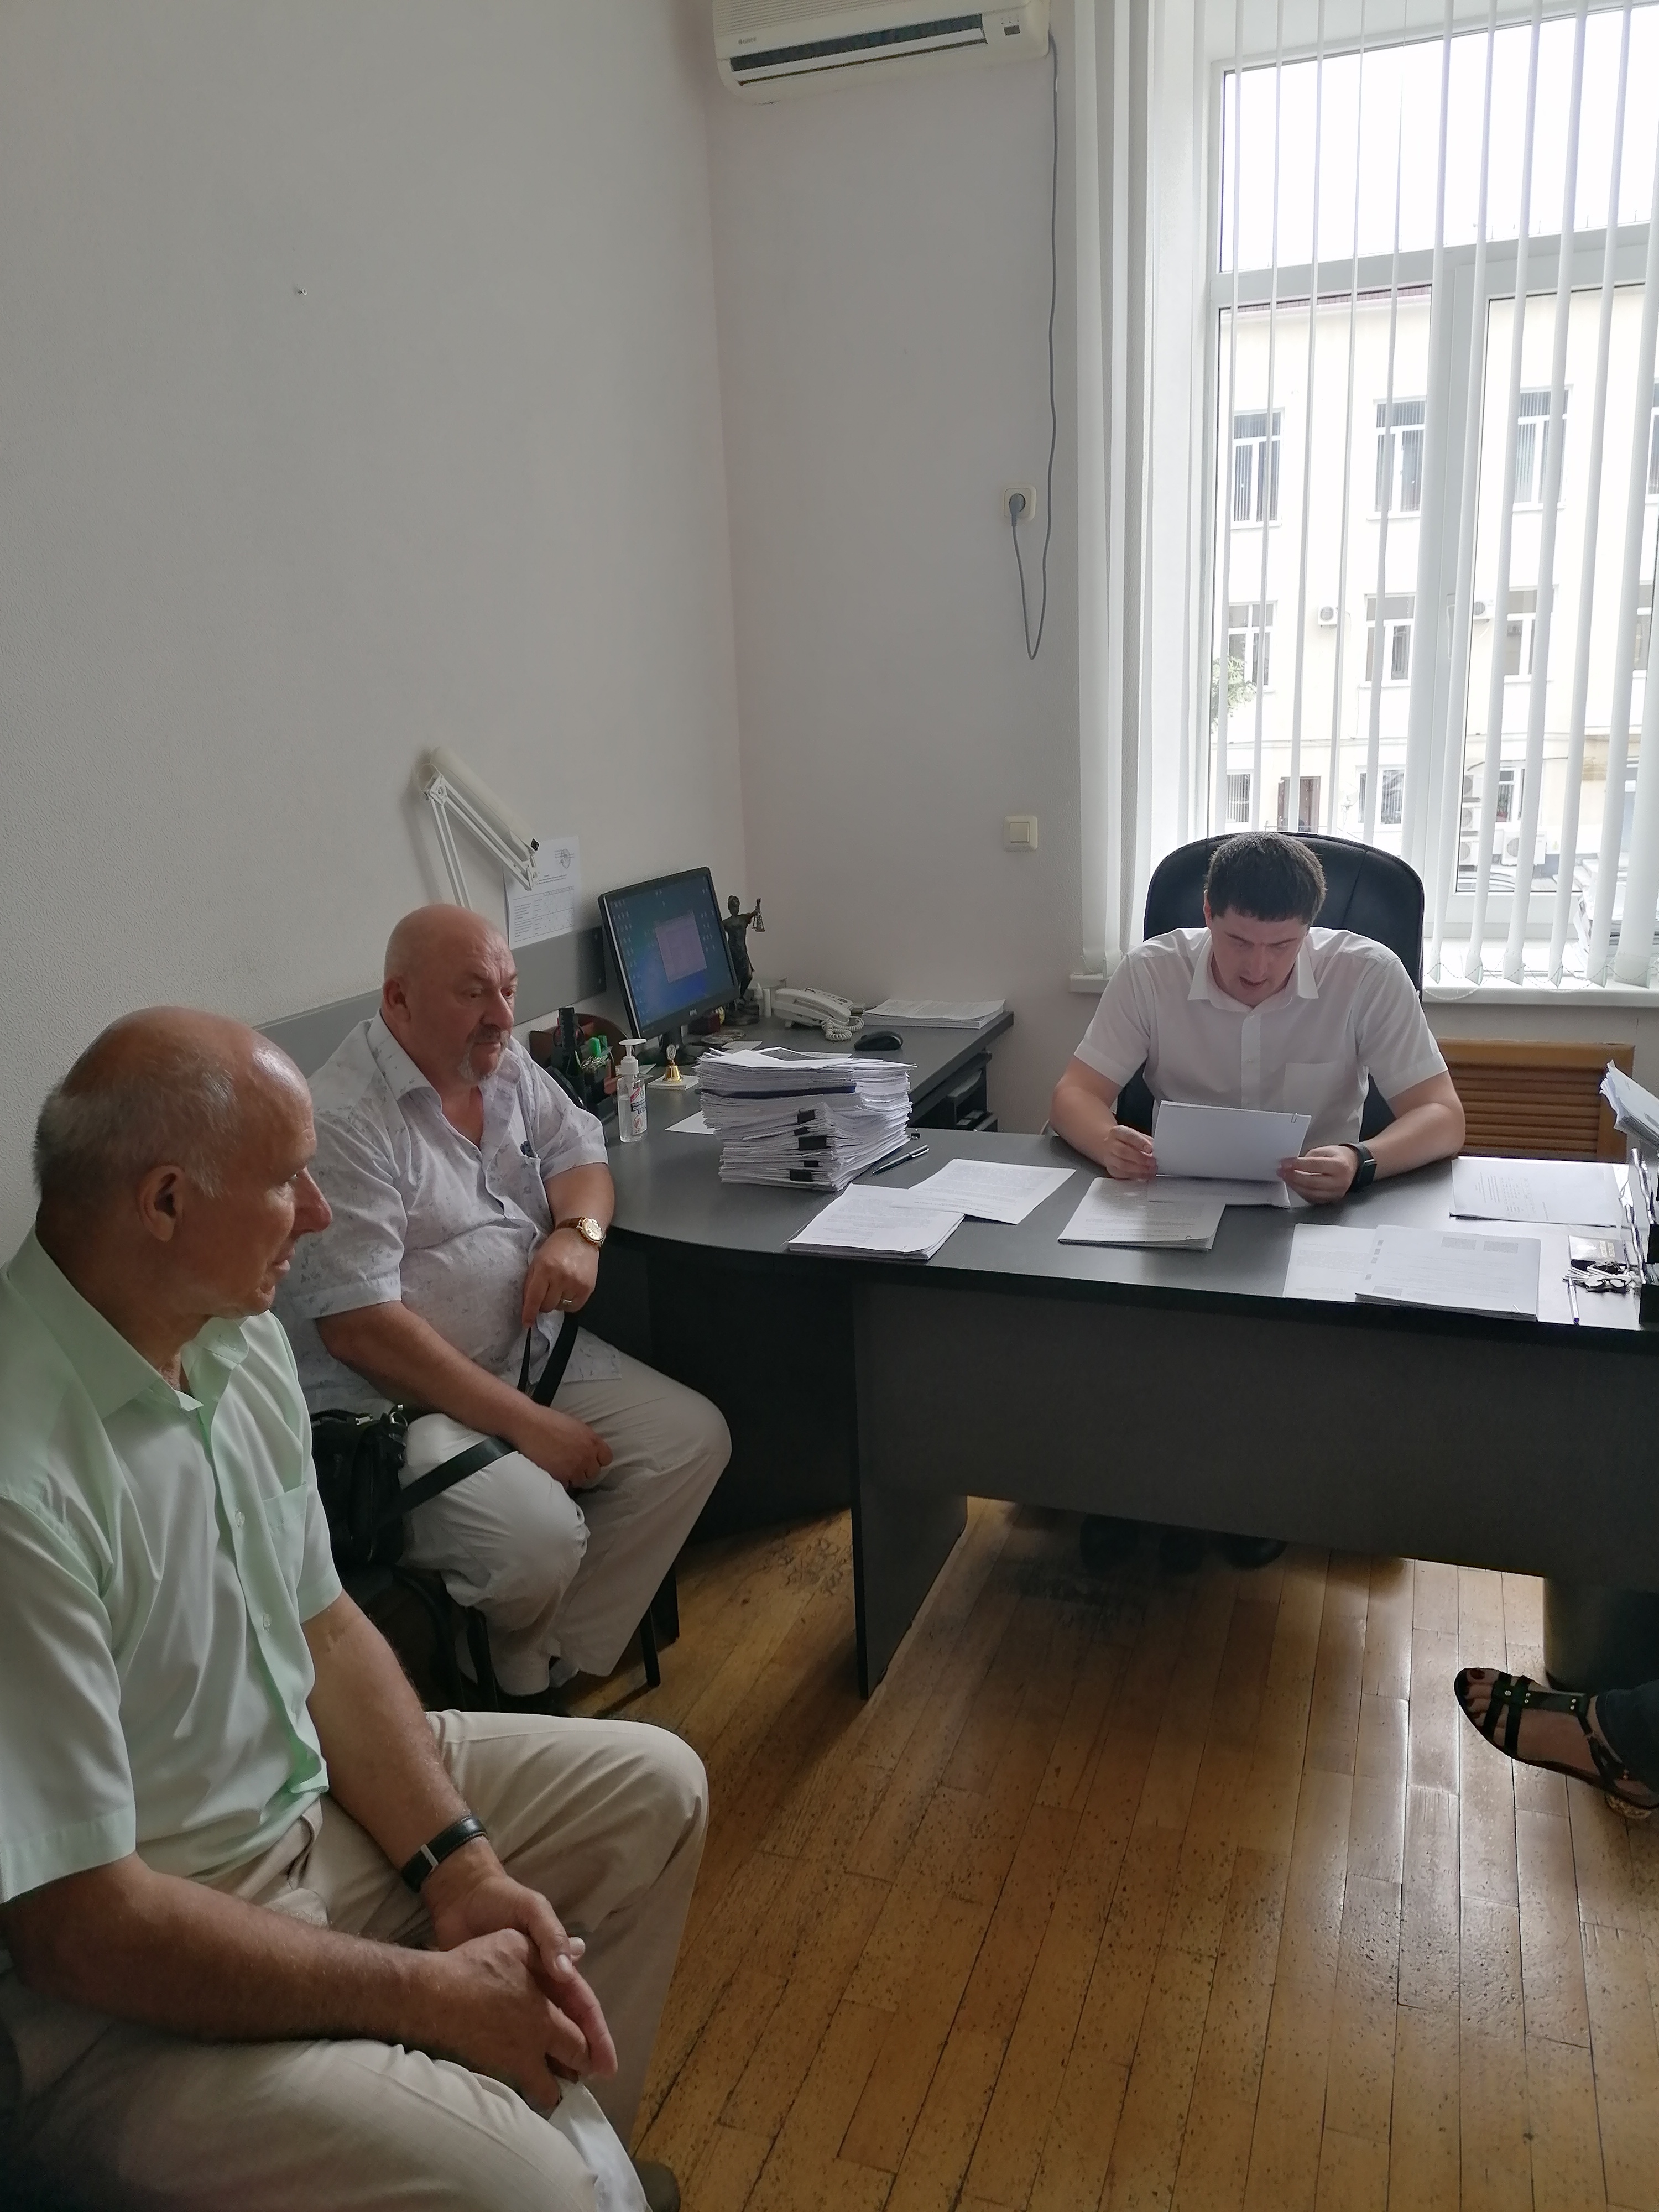 Состоялось заседание территориальной избирательной комиссии Геленджикская